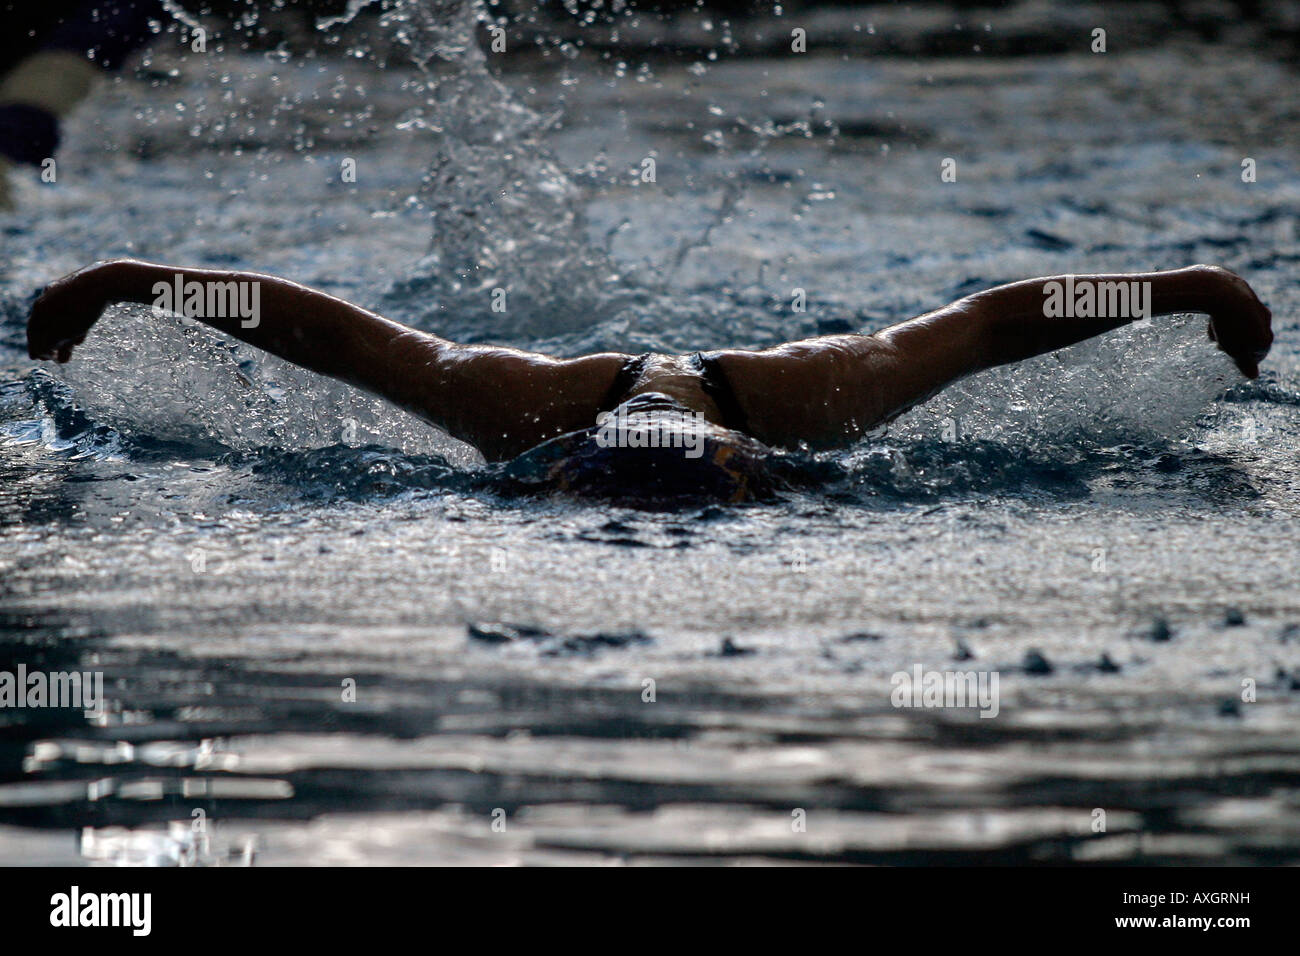 Un nageur de compétition masculine rivalise pendant une chaleur de papillon dans une rencontre de natation. Banque D'Images